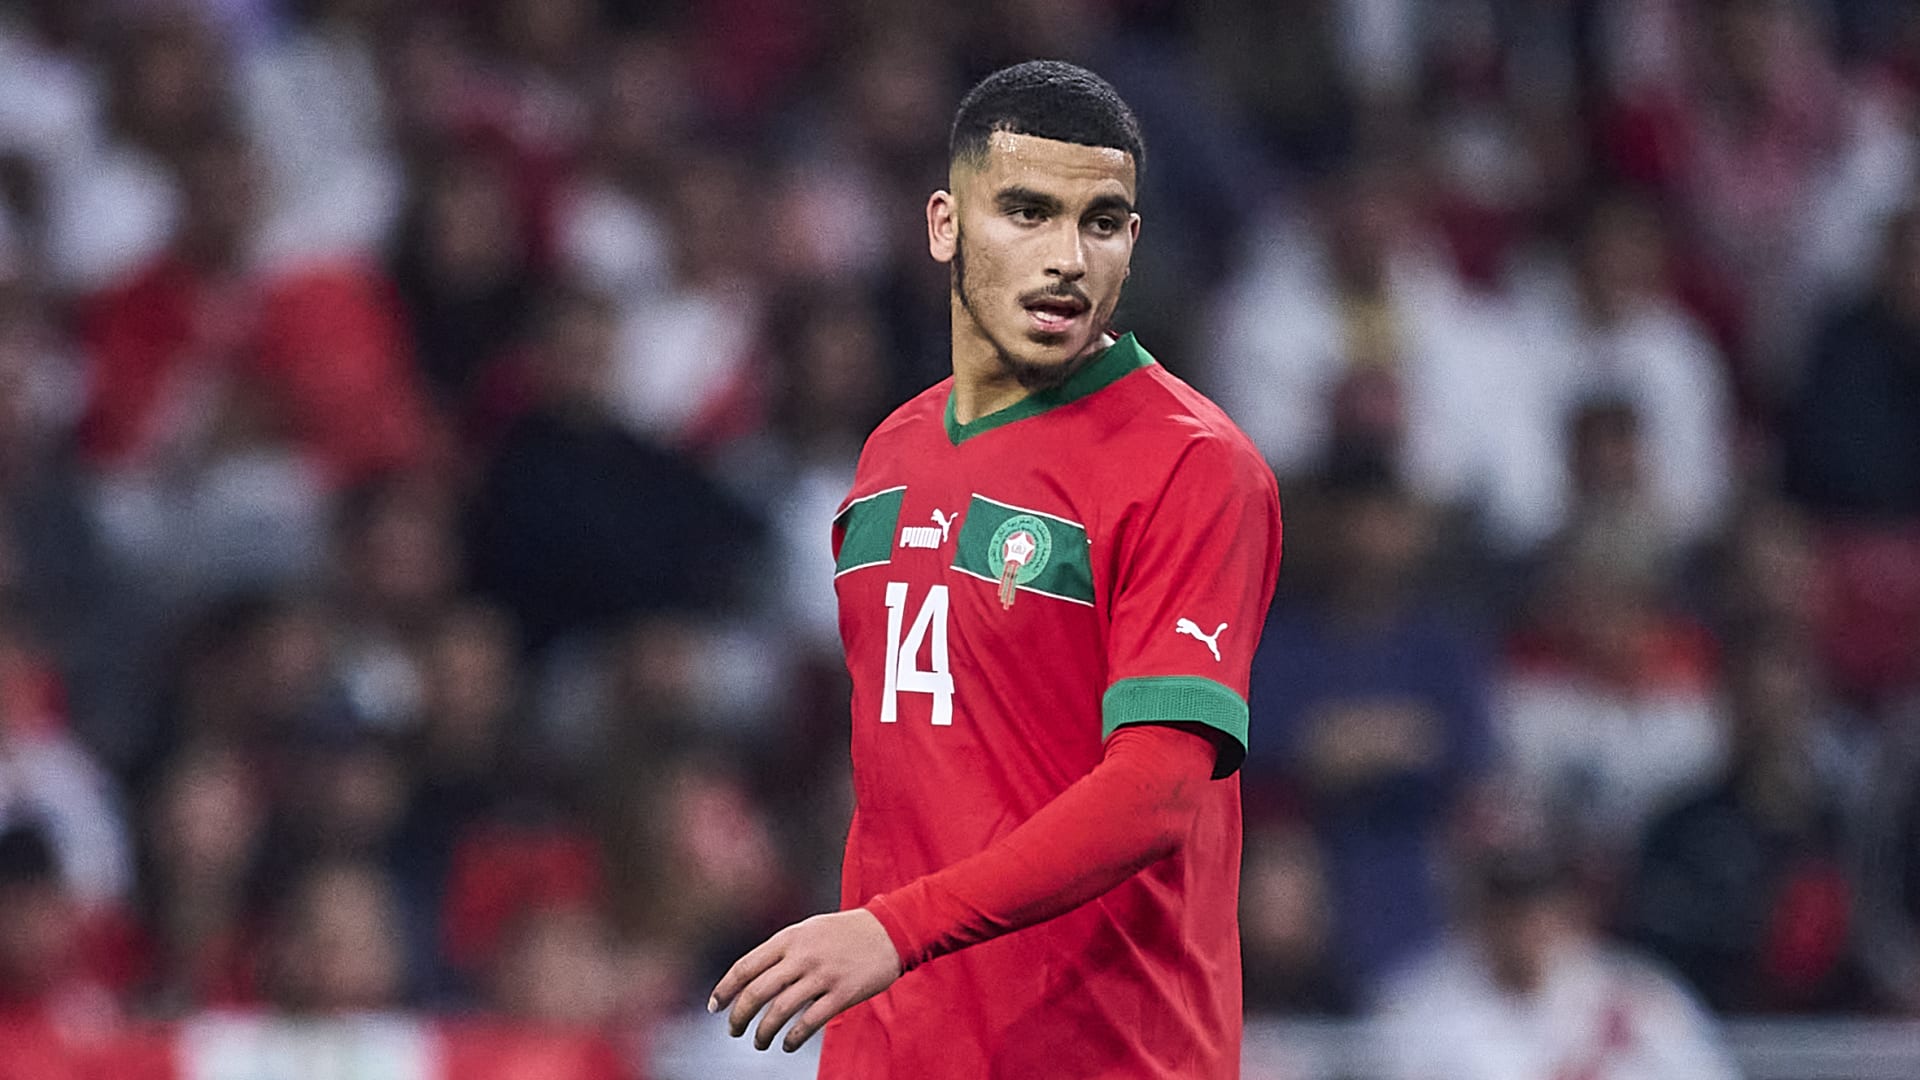 لاعب منتخب المغرب يعلّق على رفضه دعم مثلية الجنس خلال مباراة في الدوري الفرنسي